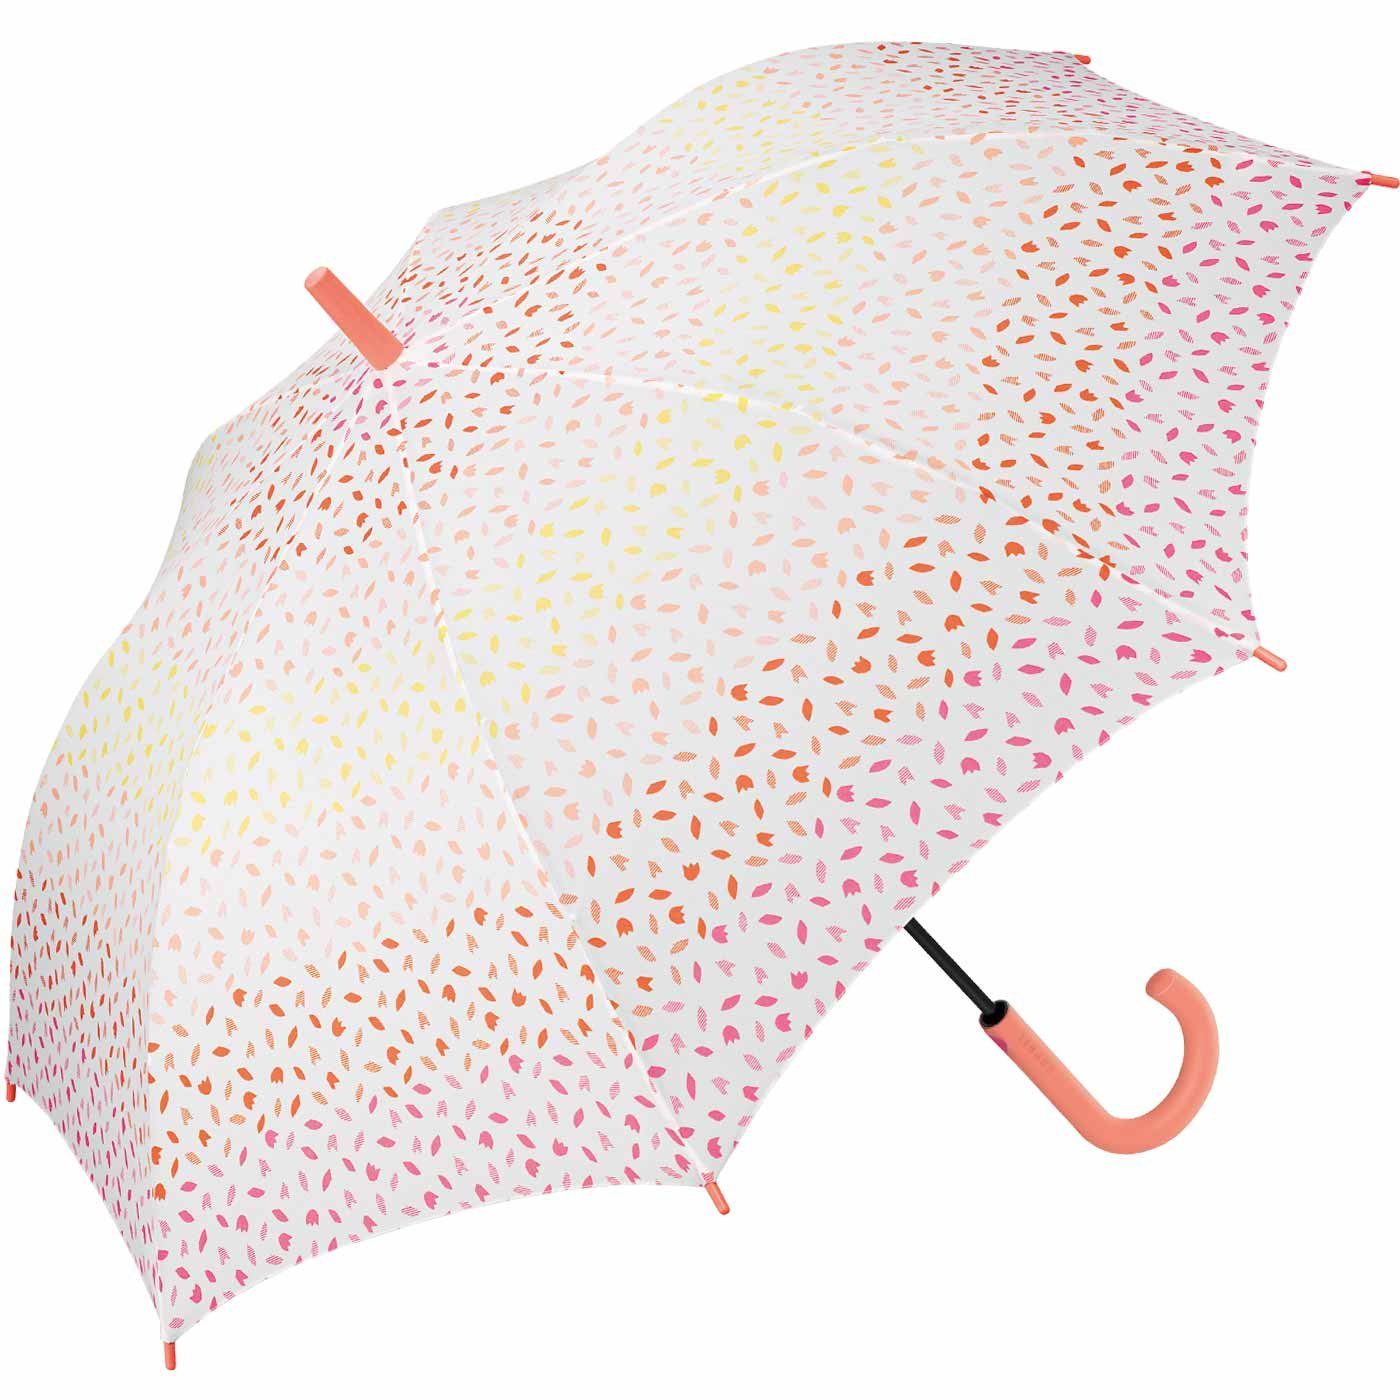 Esprit Langregenschirm Abstufung farblicher Auf-Automatik, für zarte Blütenblätter Regenschirm Damen großer in mit orange